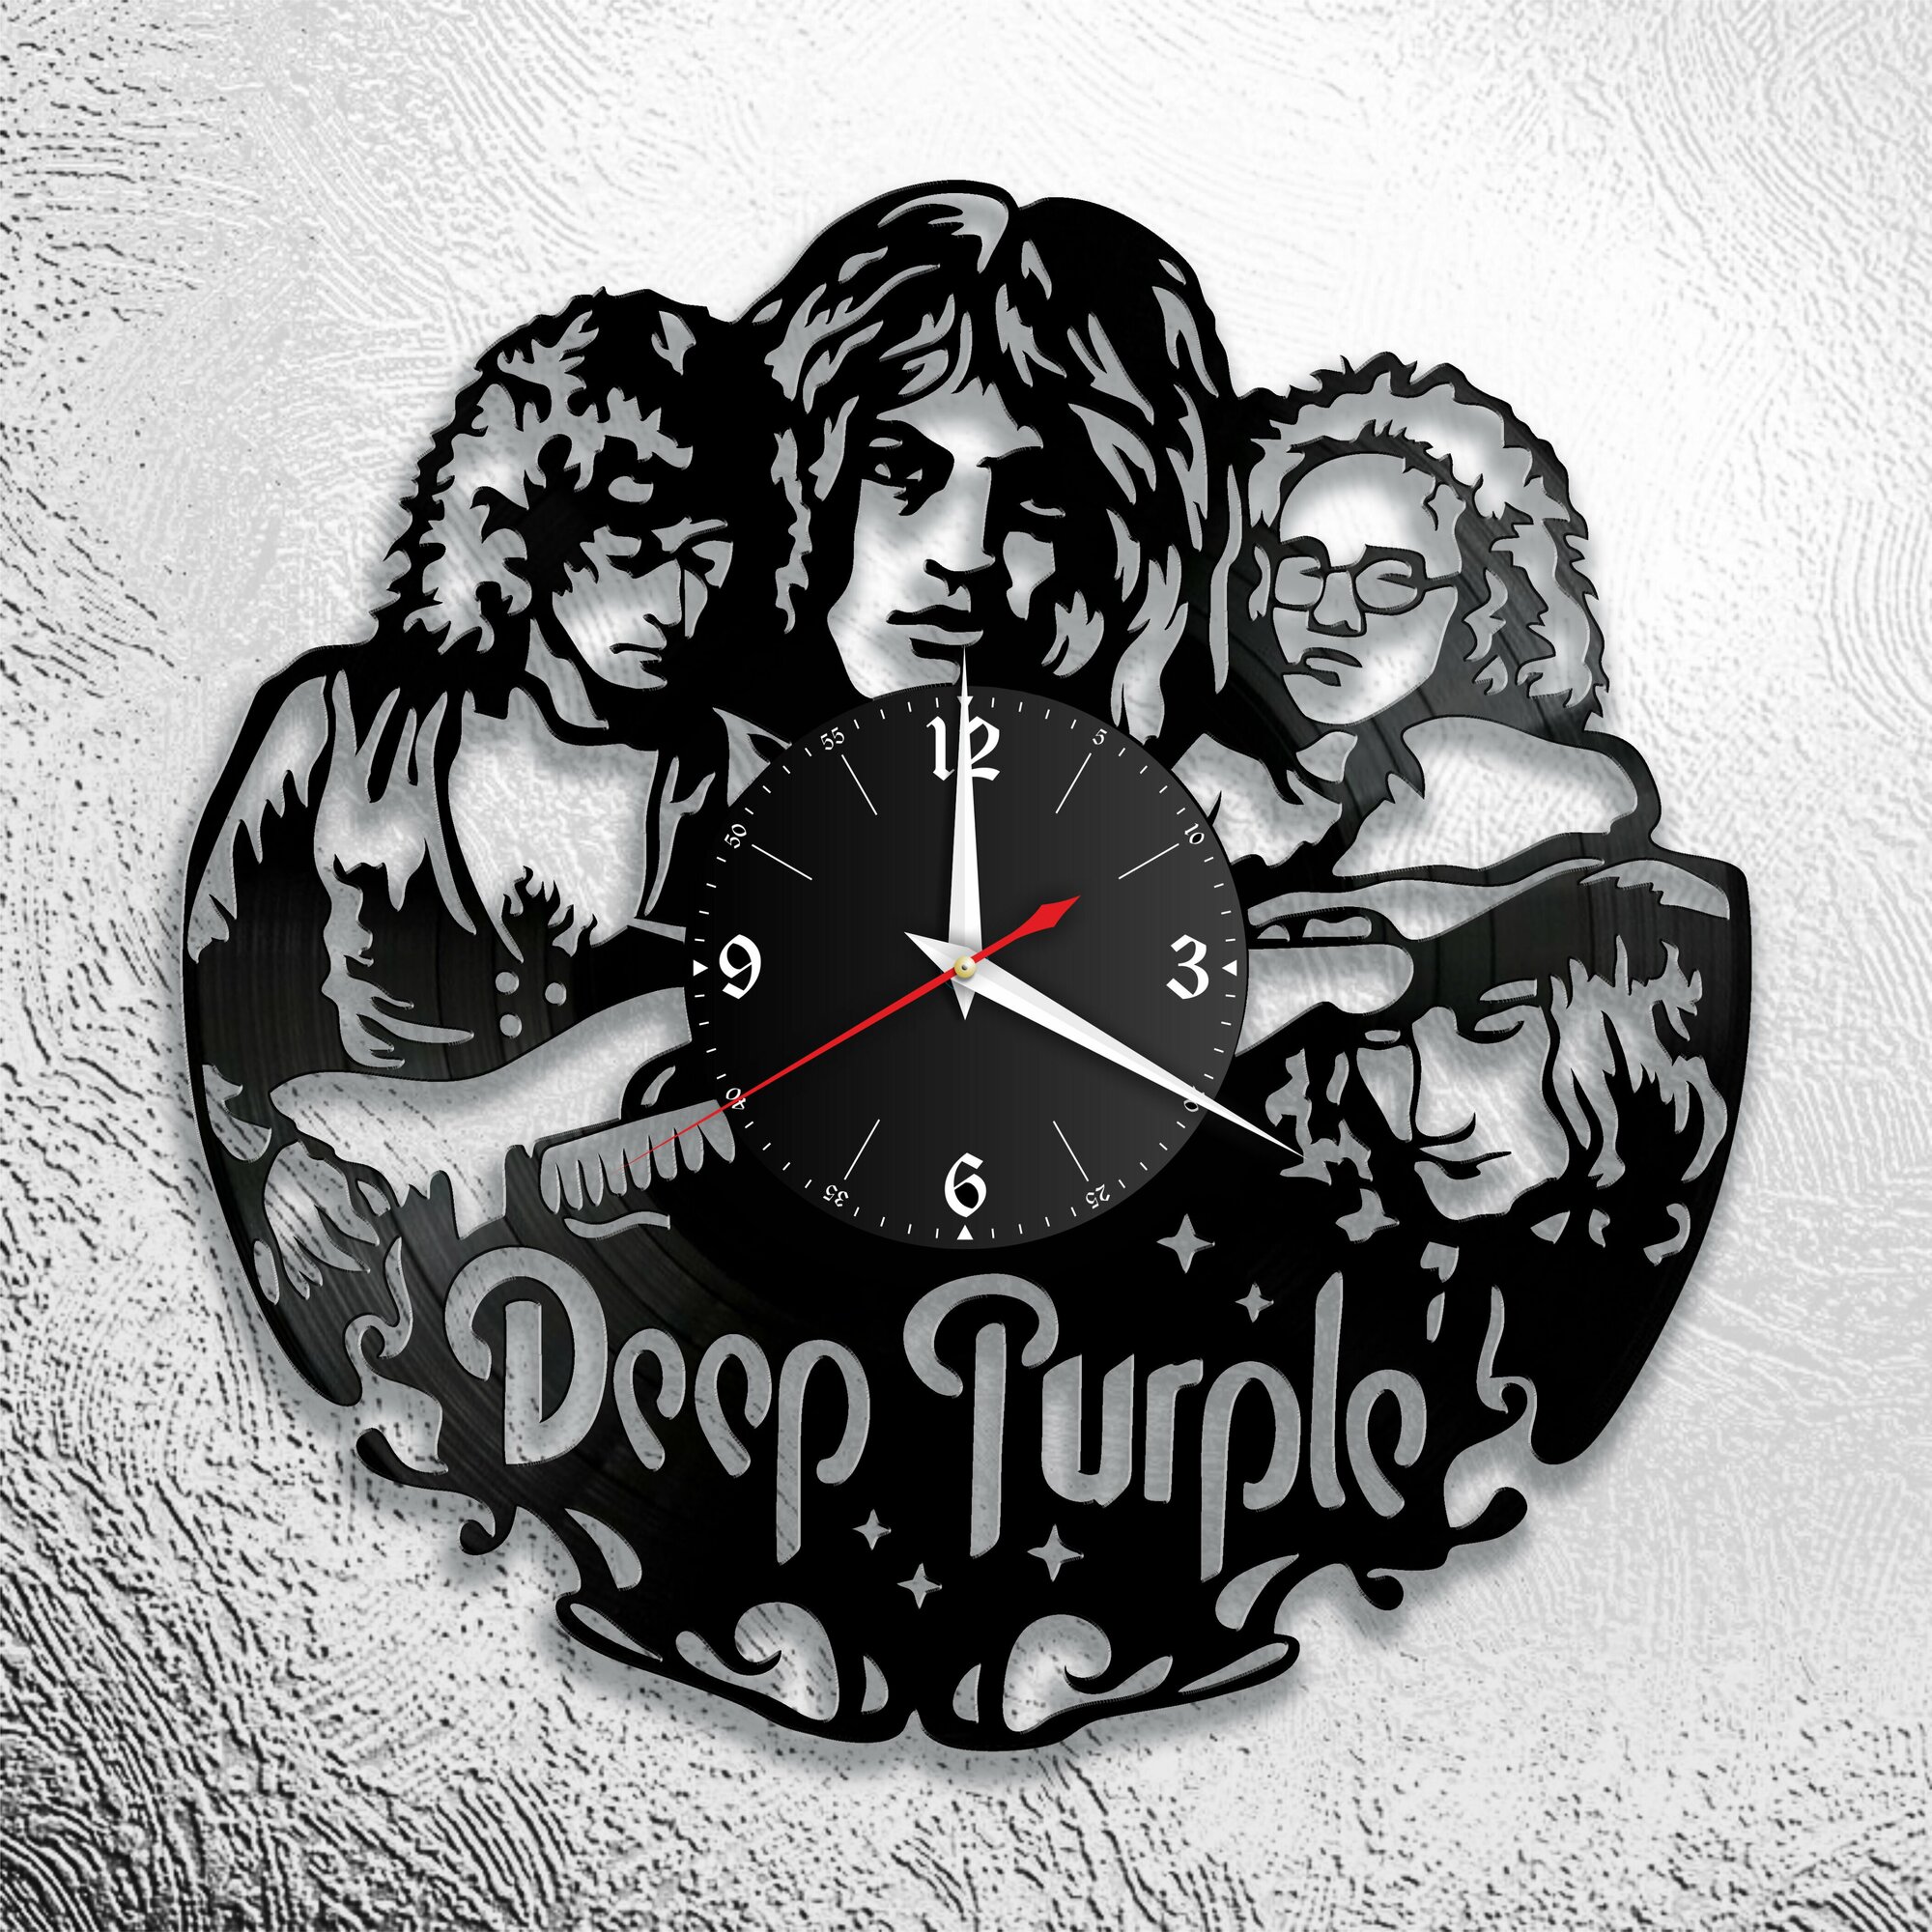 Настенные часы из виниловой пластинки с группой Deep Purple/Дип Пёрпл/Jon Lord/Ian Gillan